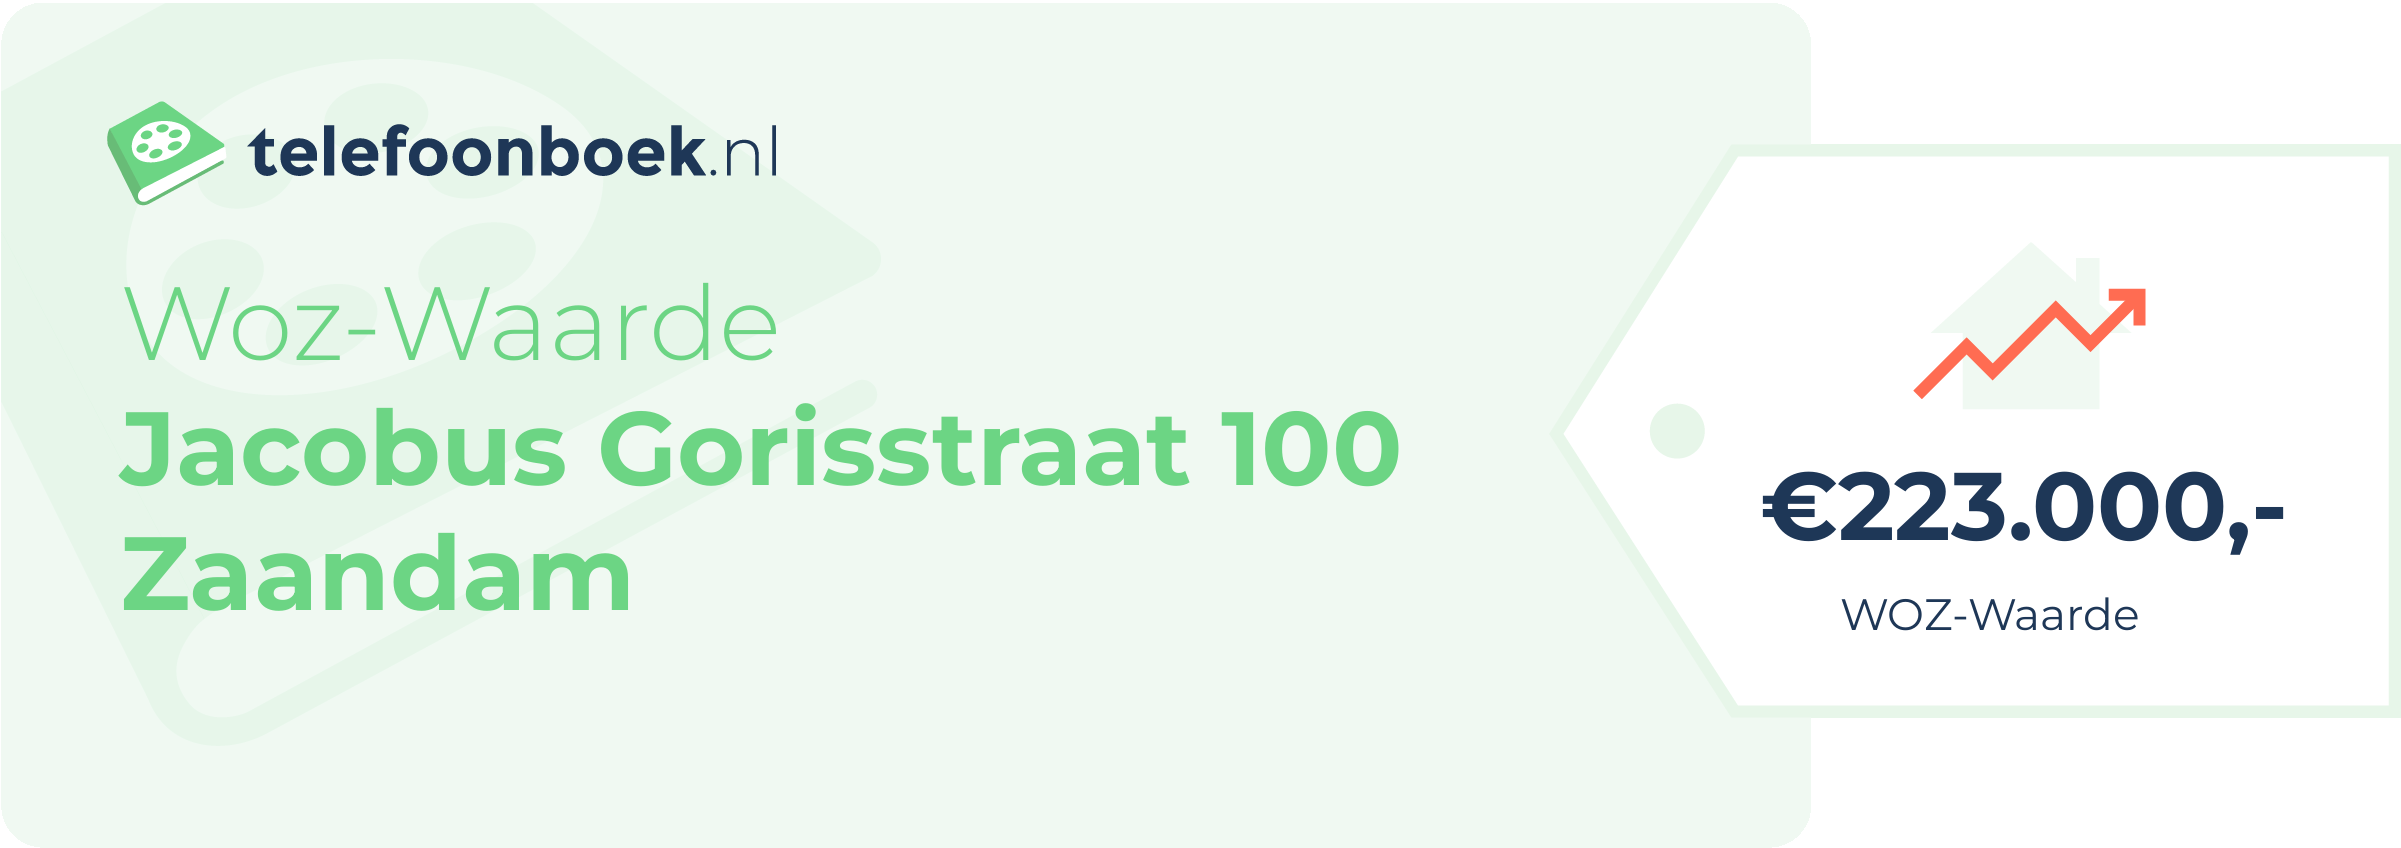 WOZ-waarde Jacobus Gorisstraat 100 Zaandam